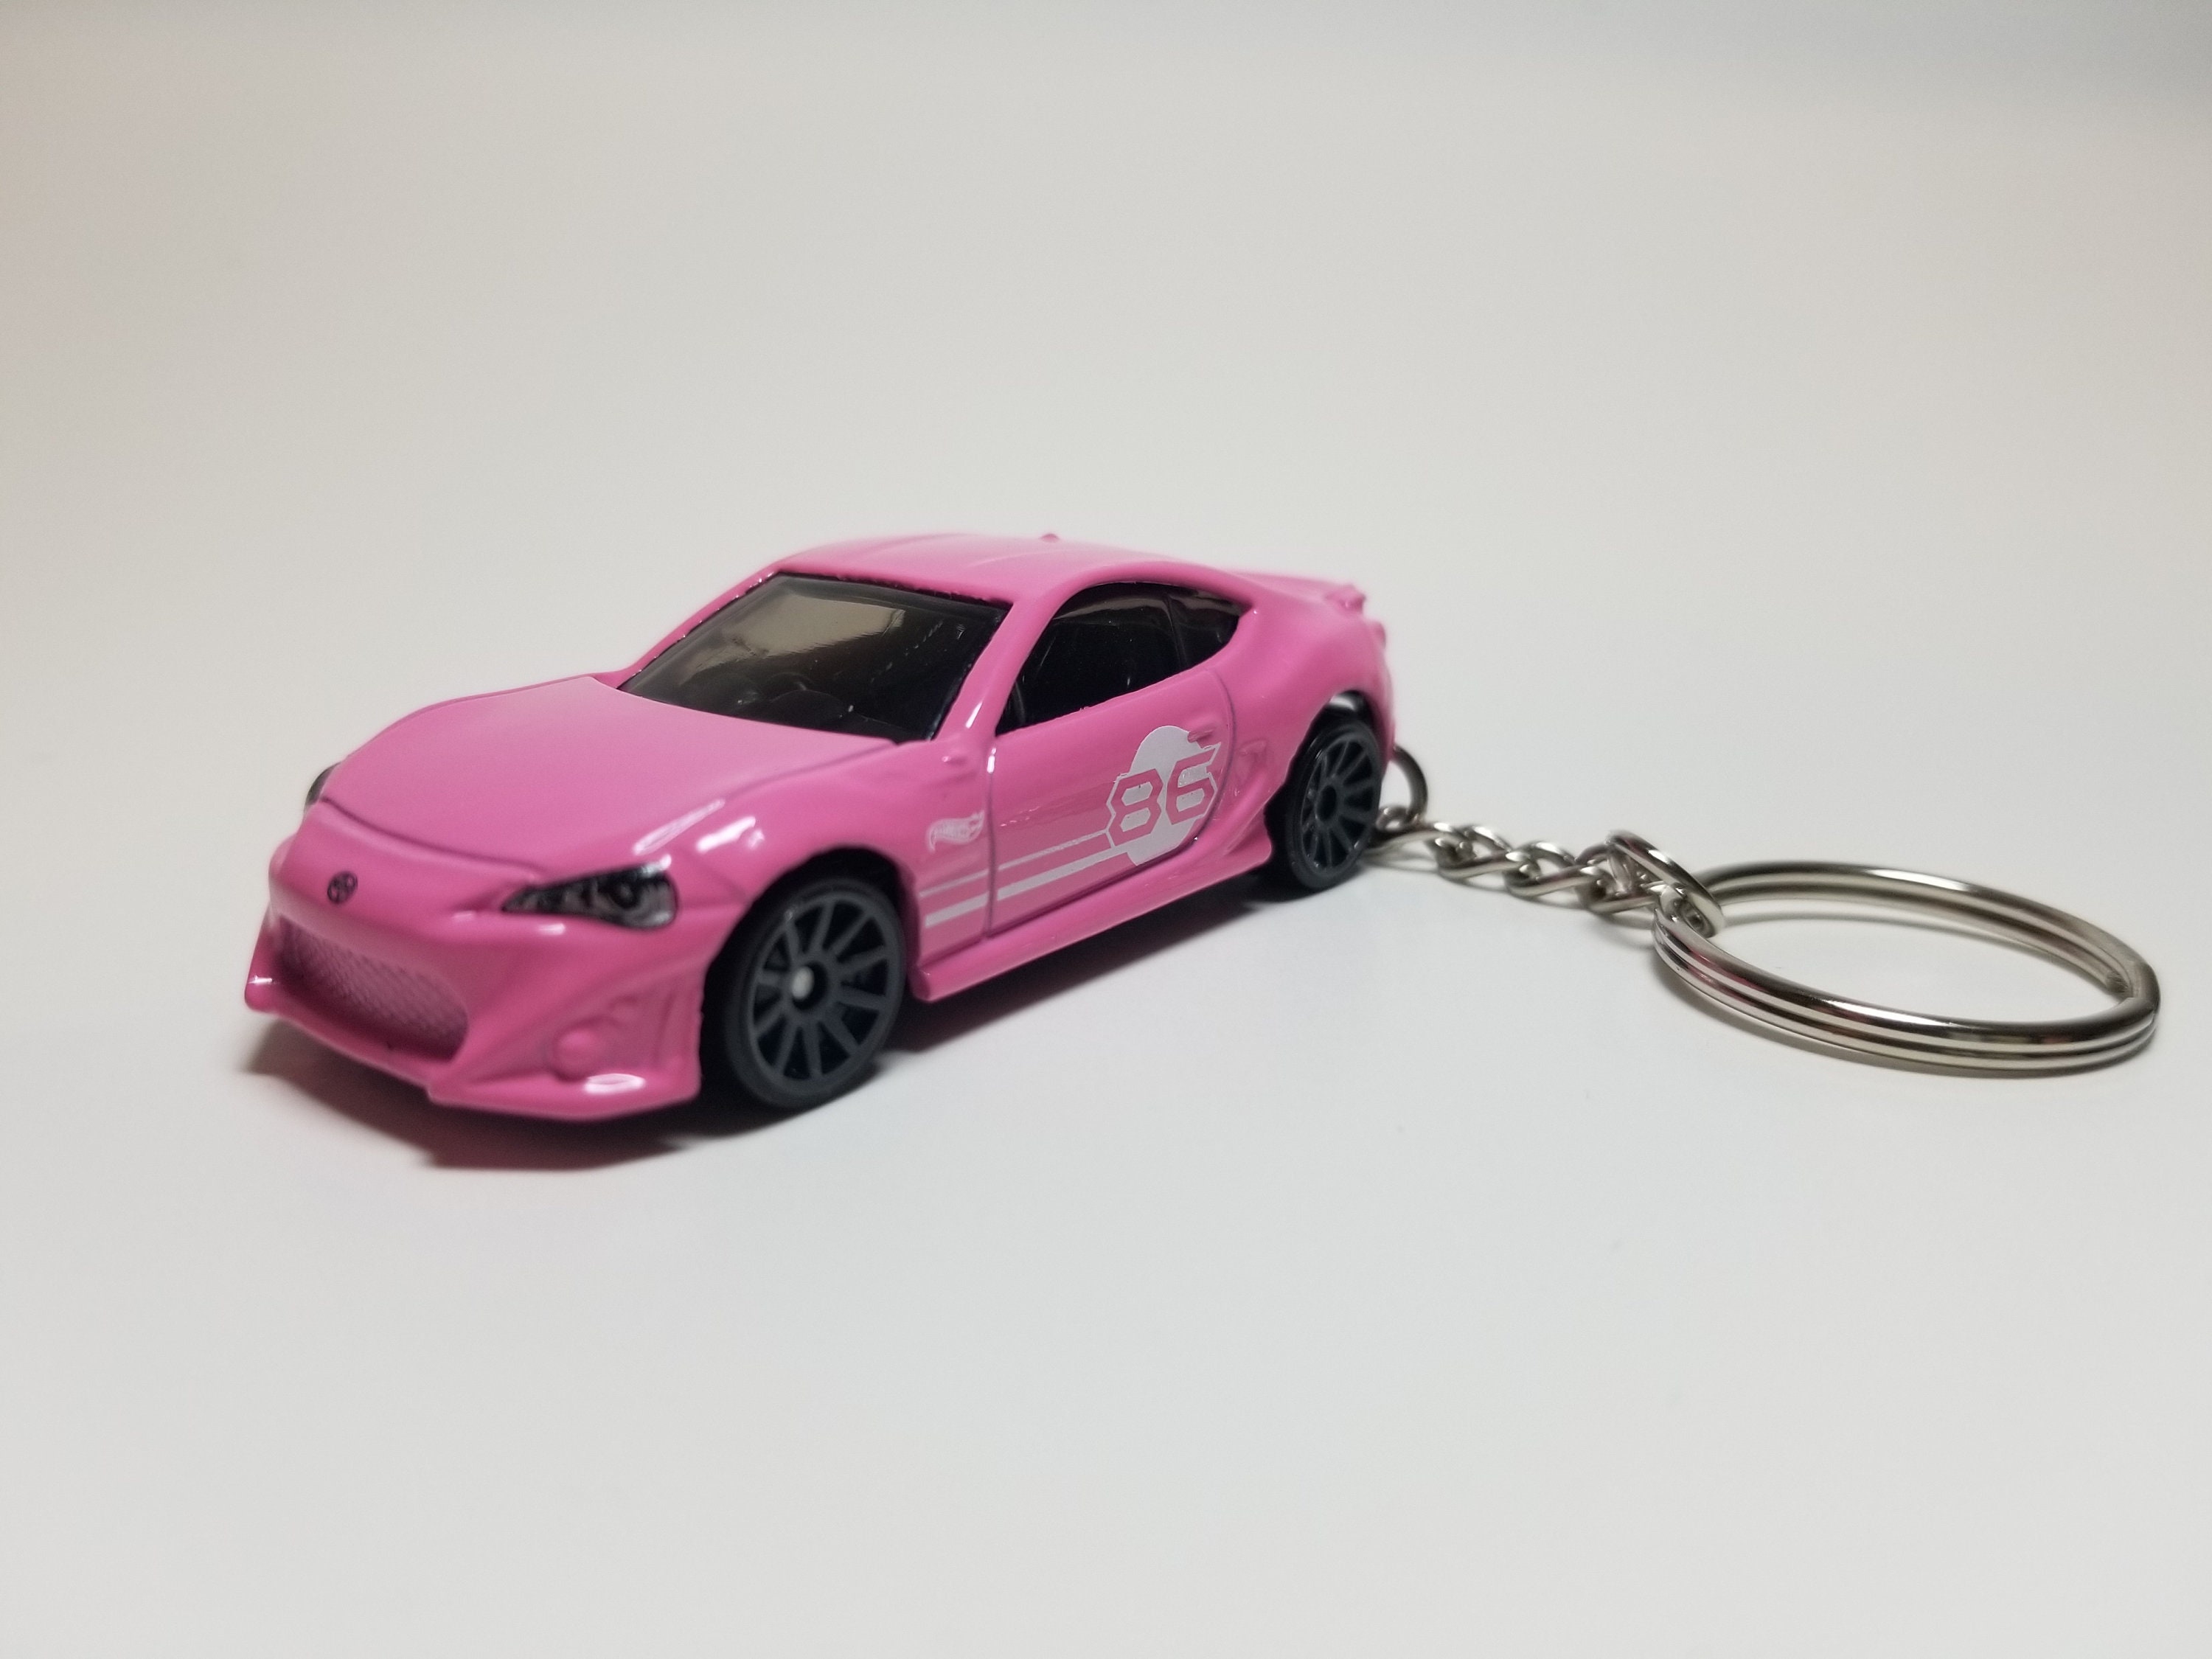 Toyota Gt86 Keychain 